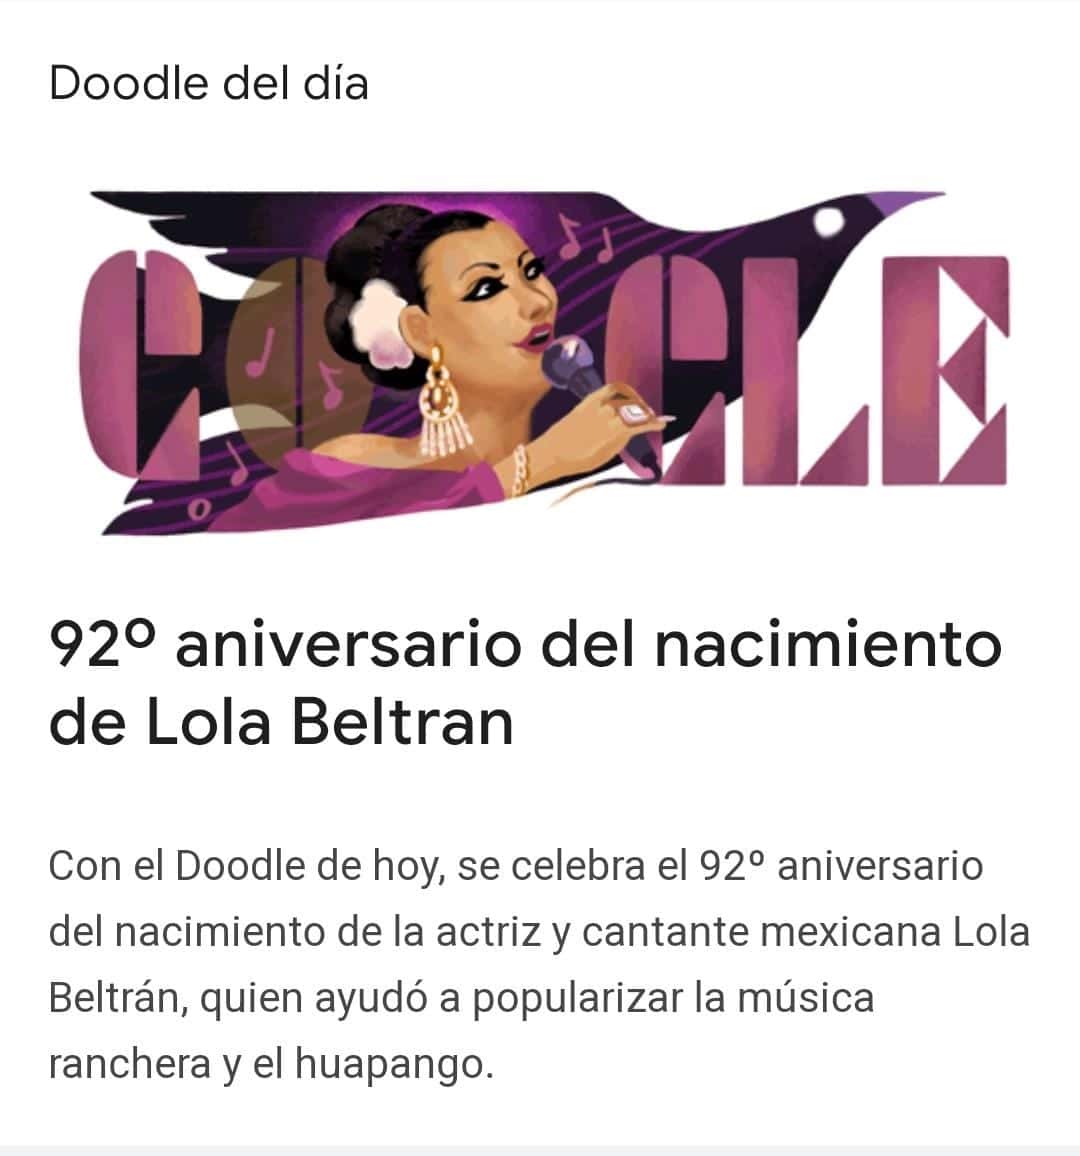 Google recuerda con un doodle el 92 aniversario del nacimiento de Lola Beltrán